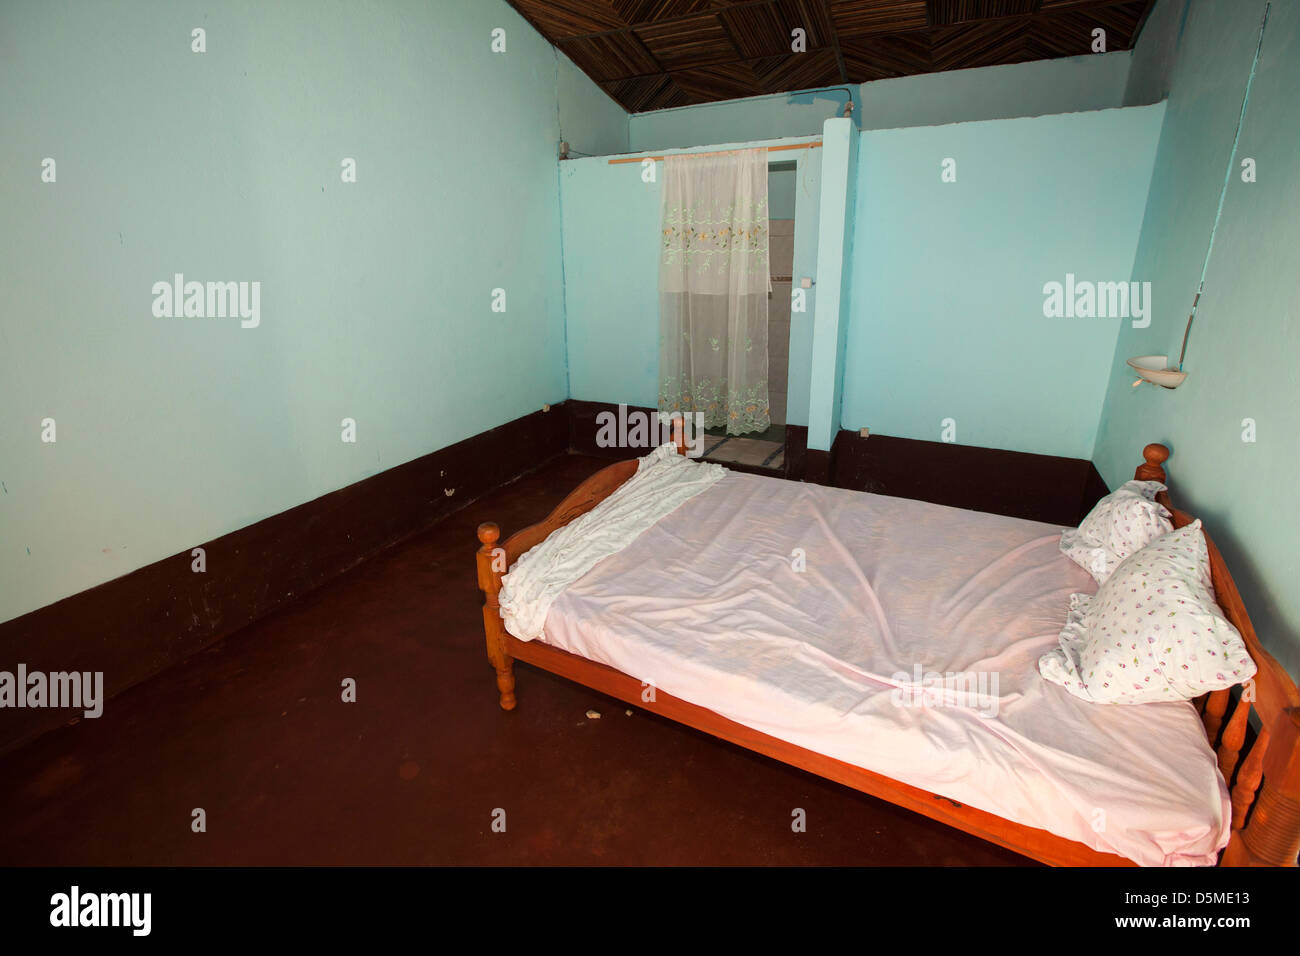 Madagaskar, Ankify, Marina Hotel spärlich möbliert Schlafzimmer Stockfoto